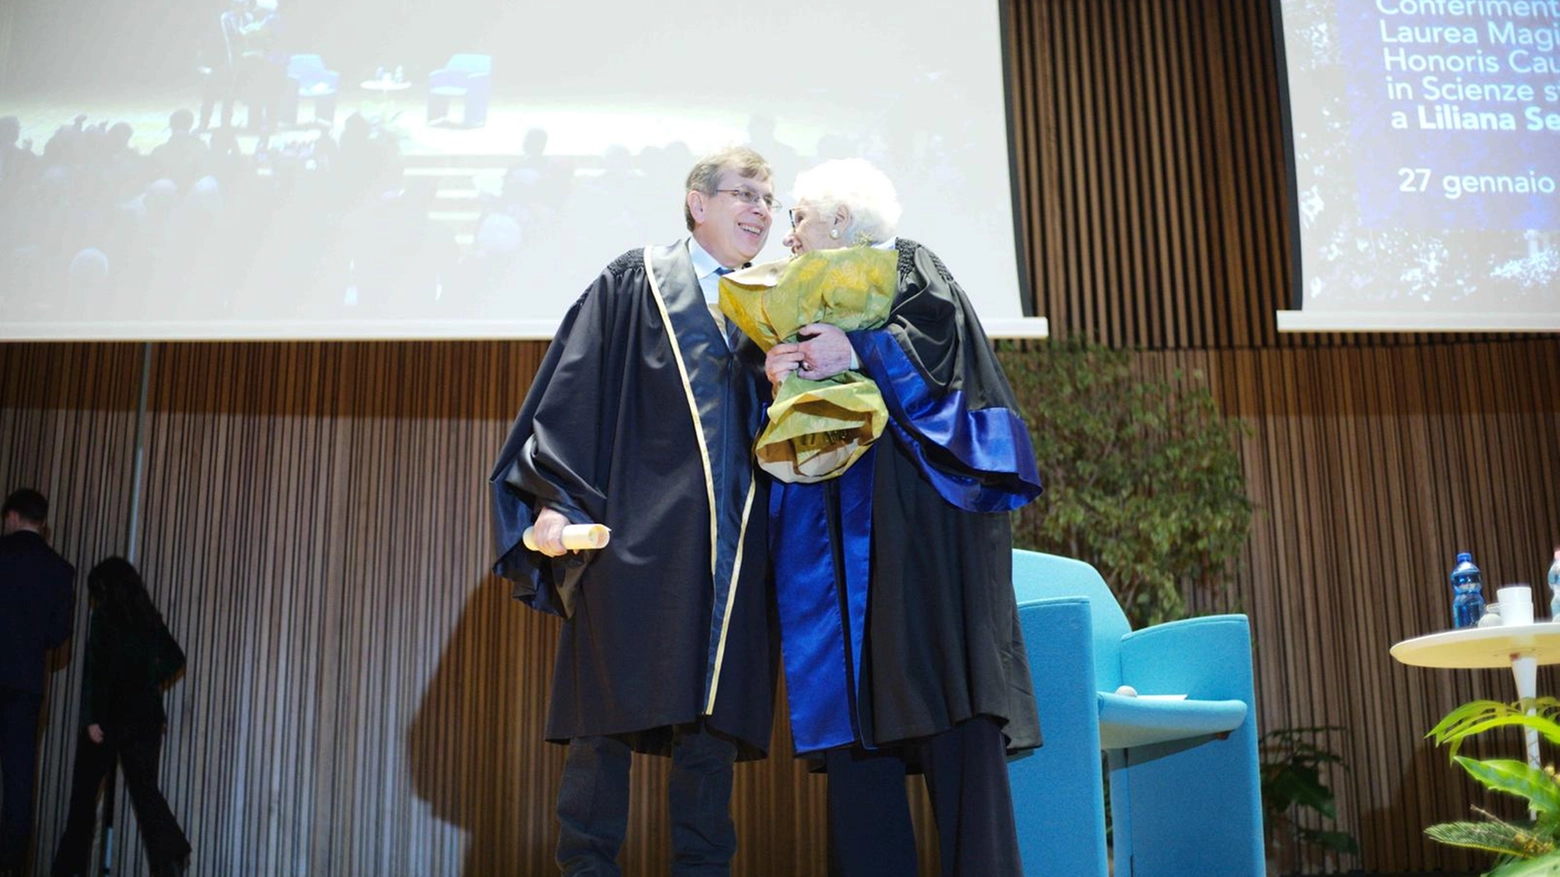 La consegna della laurea honoris causa a Liliana Segre alla Statale di Milano (Foto Canella)